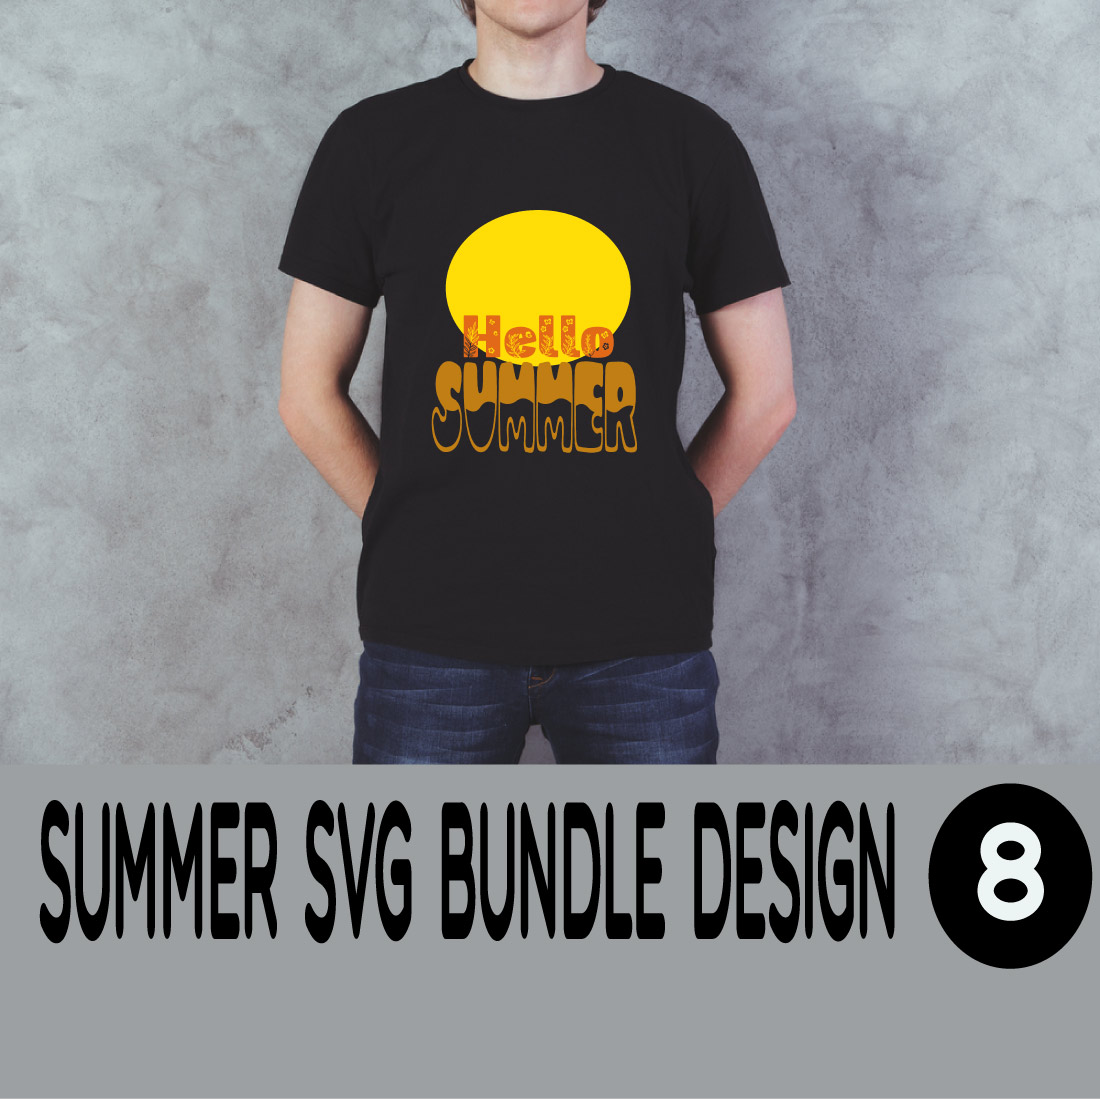 Summer SVG Bundle main cover.